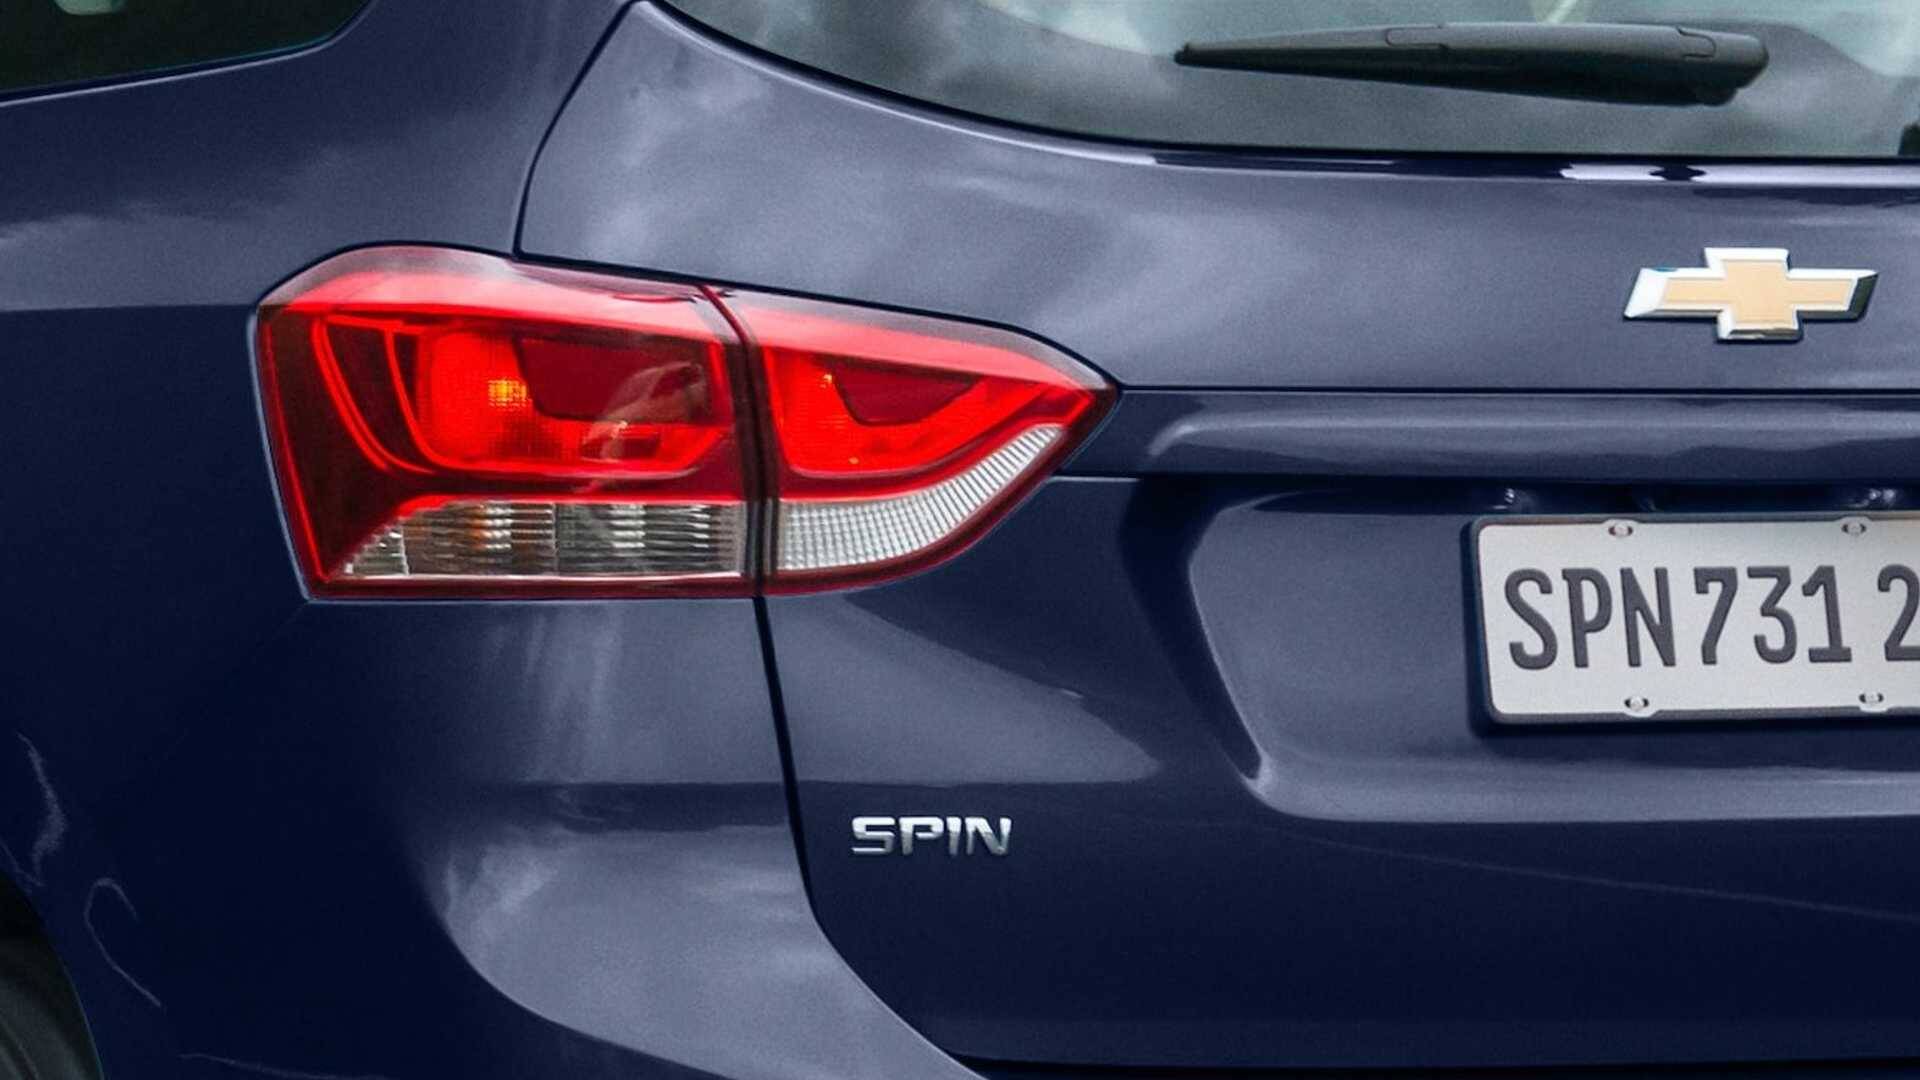 Chevrolet Spin Premier 2020. Foto: Divulgação